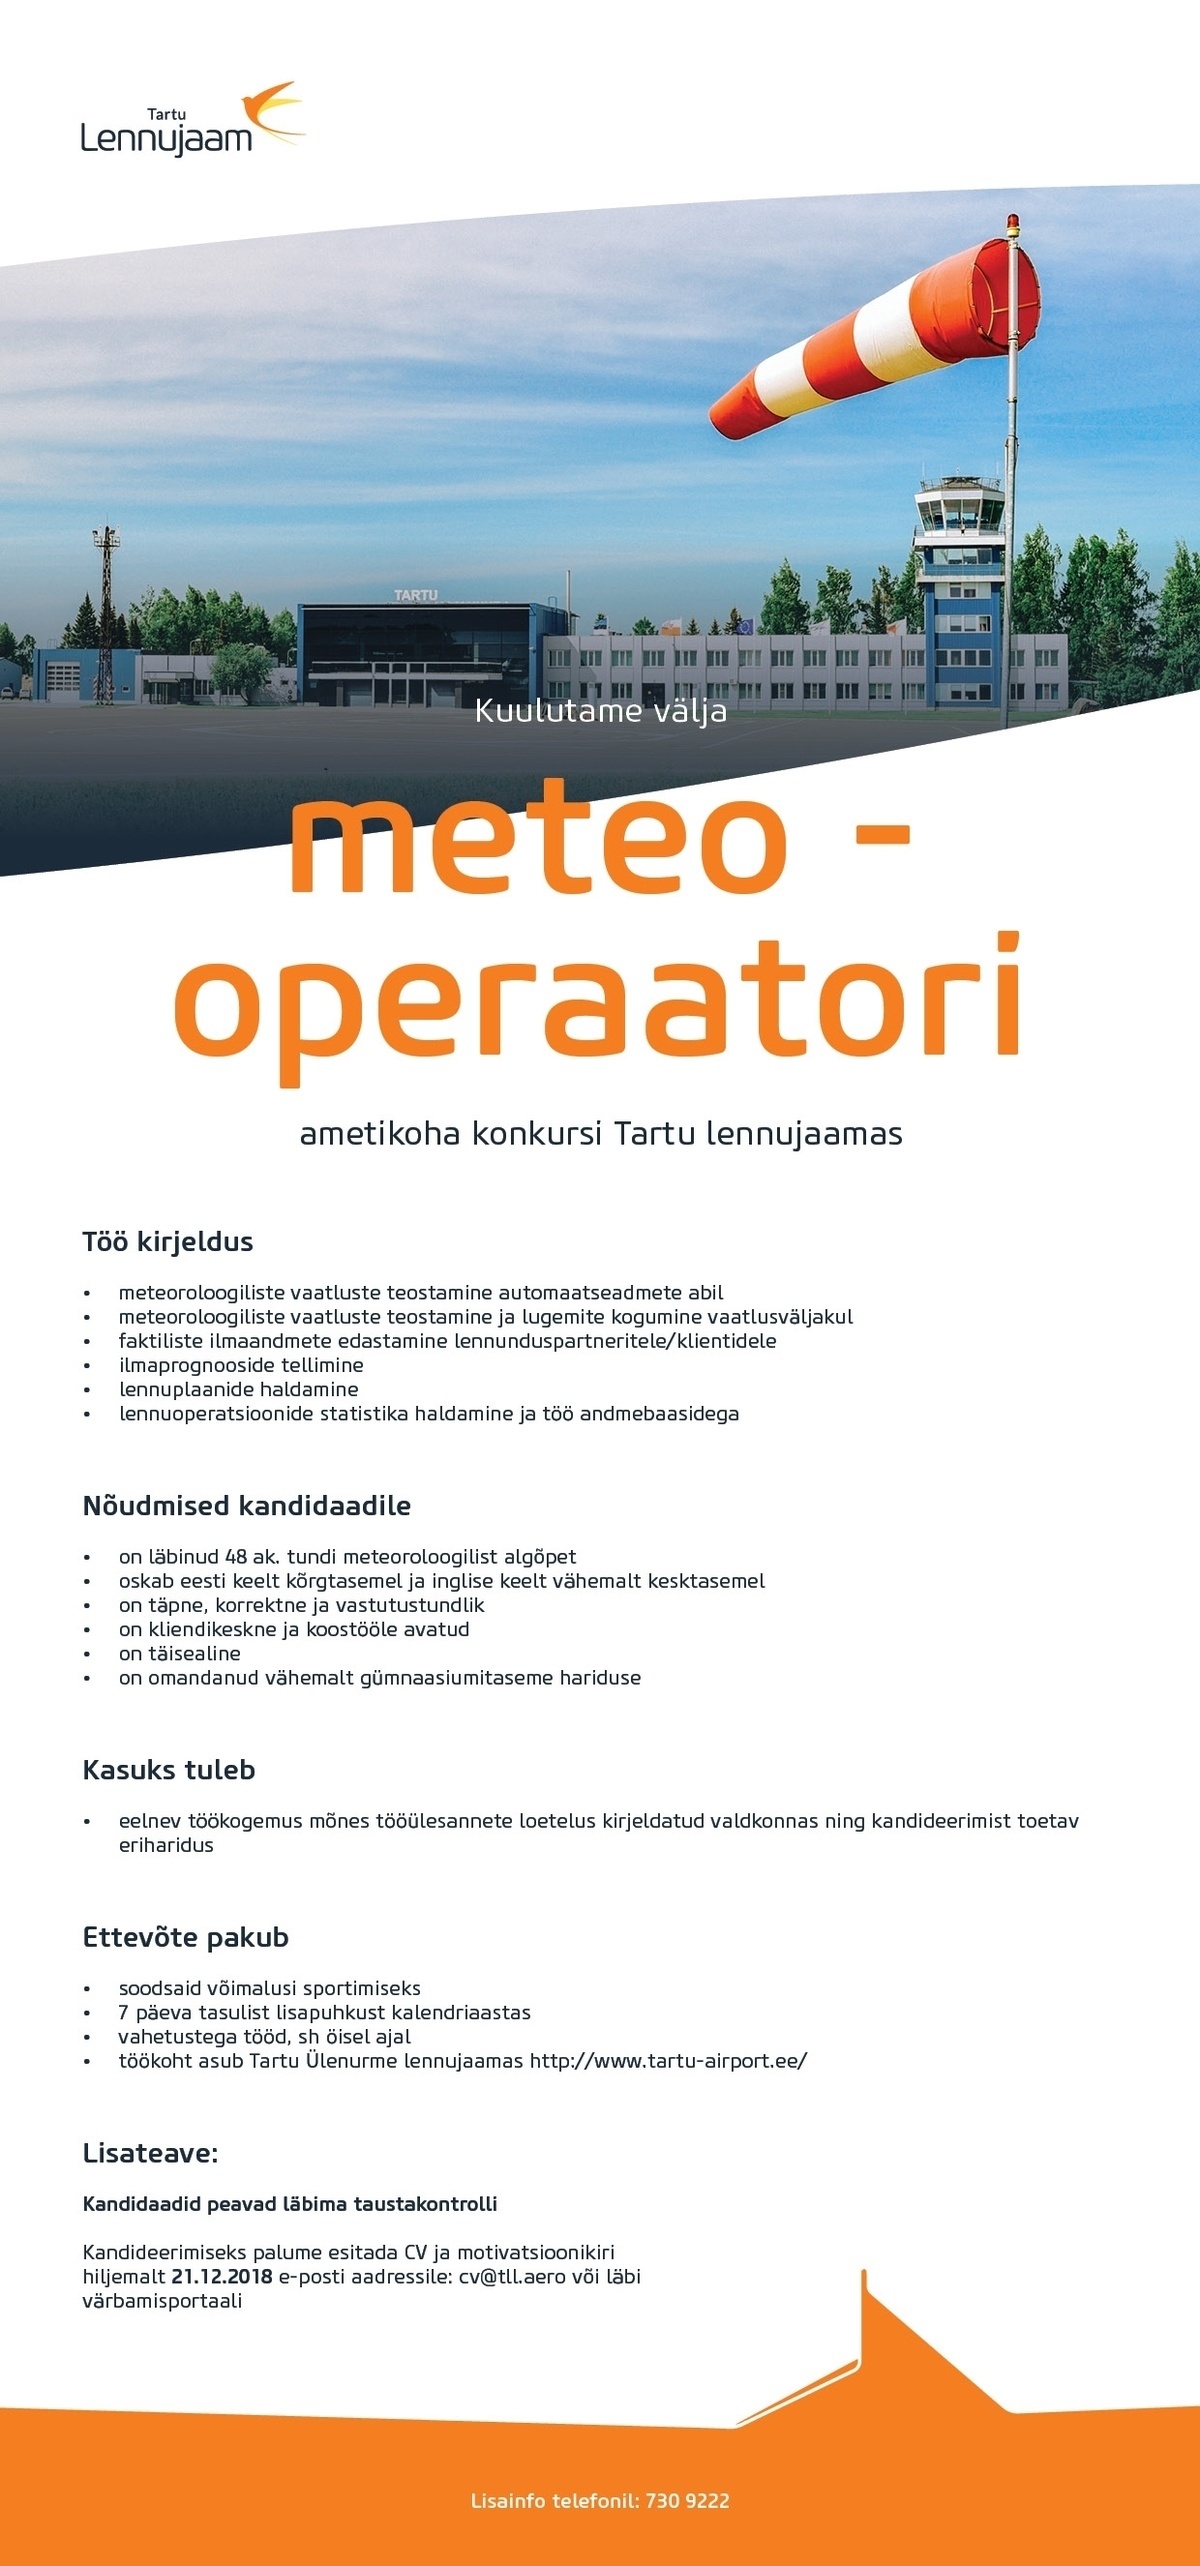 Tallinna Lennujaam AS Meteo - operaator Tartu lennujaamas